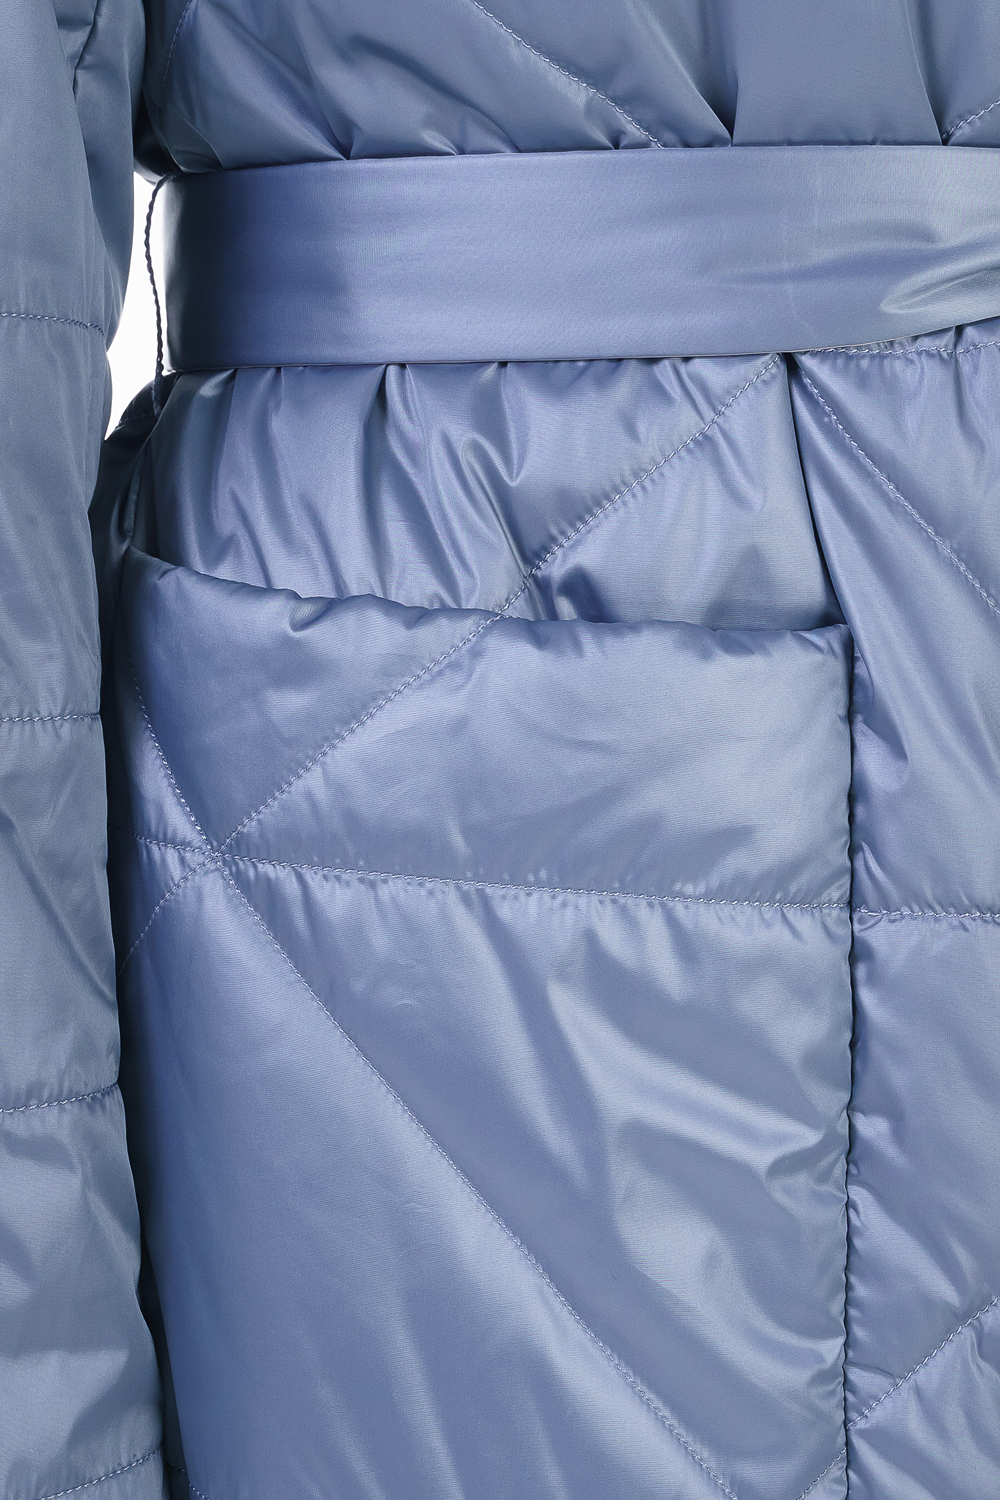 Пальто женское OHARA CC-21700 голубое 44 RU